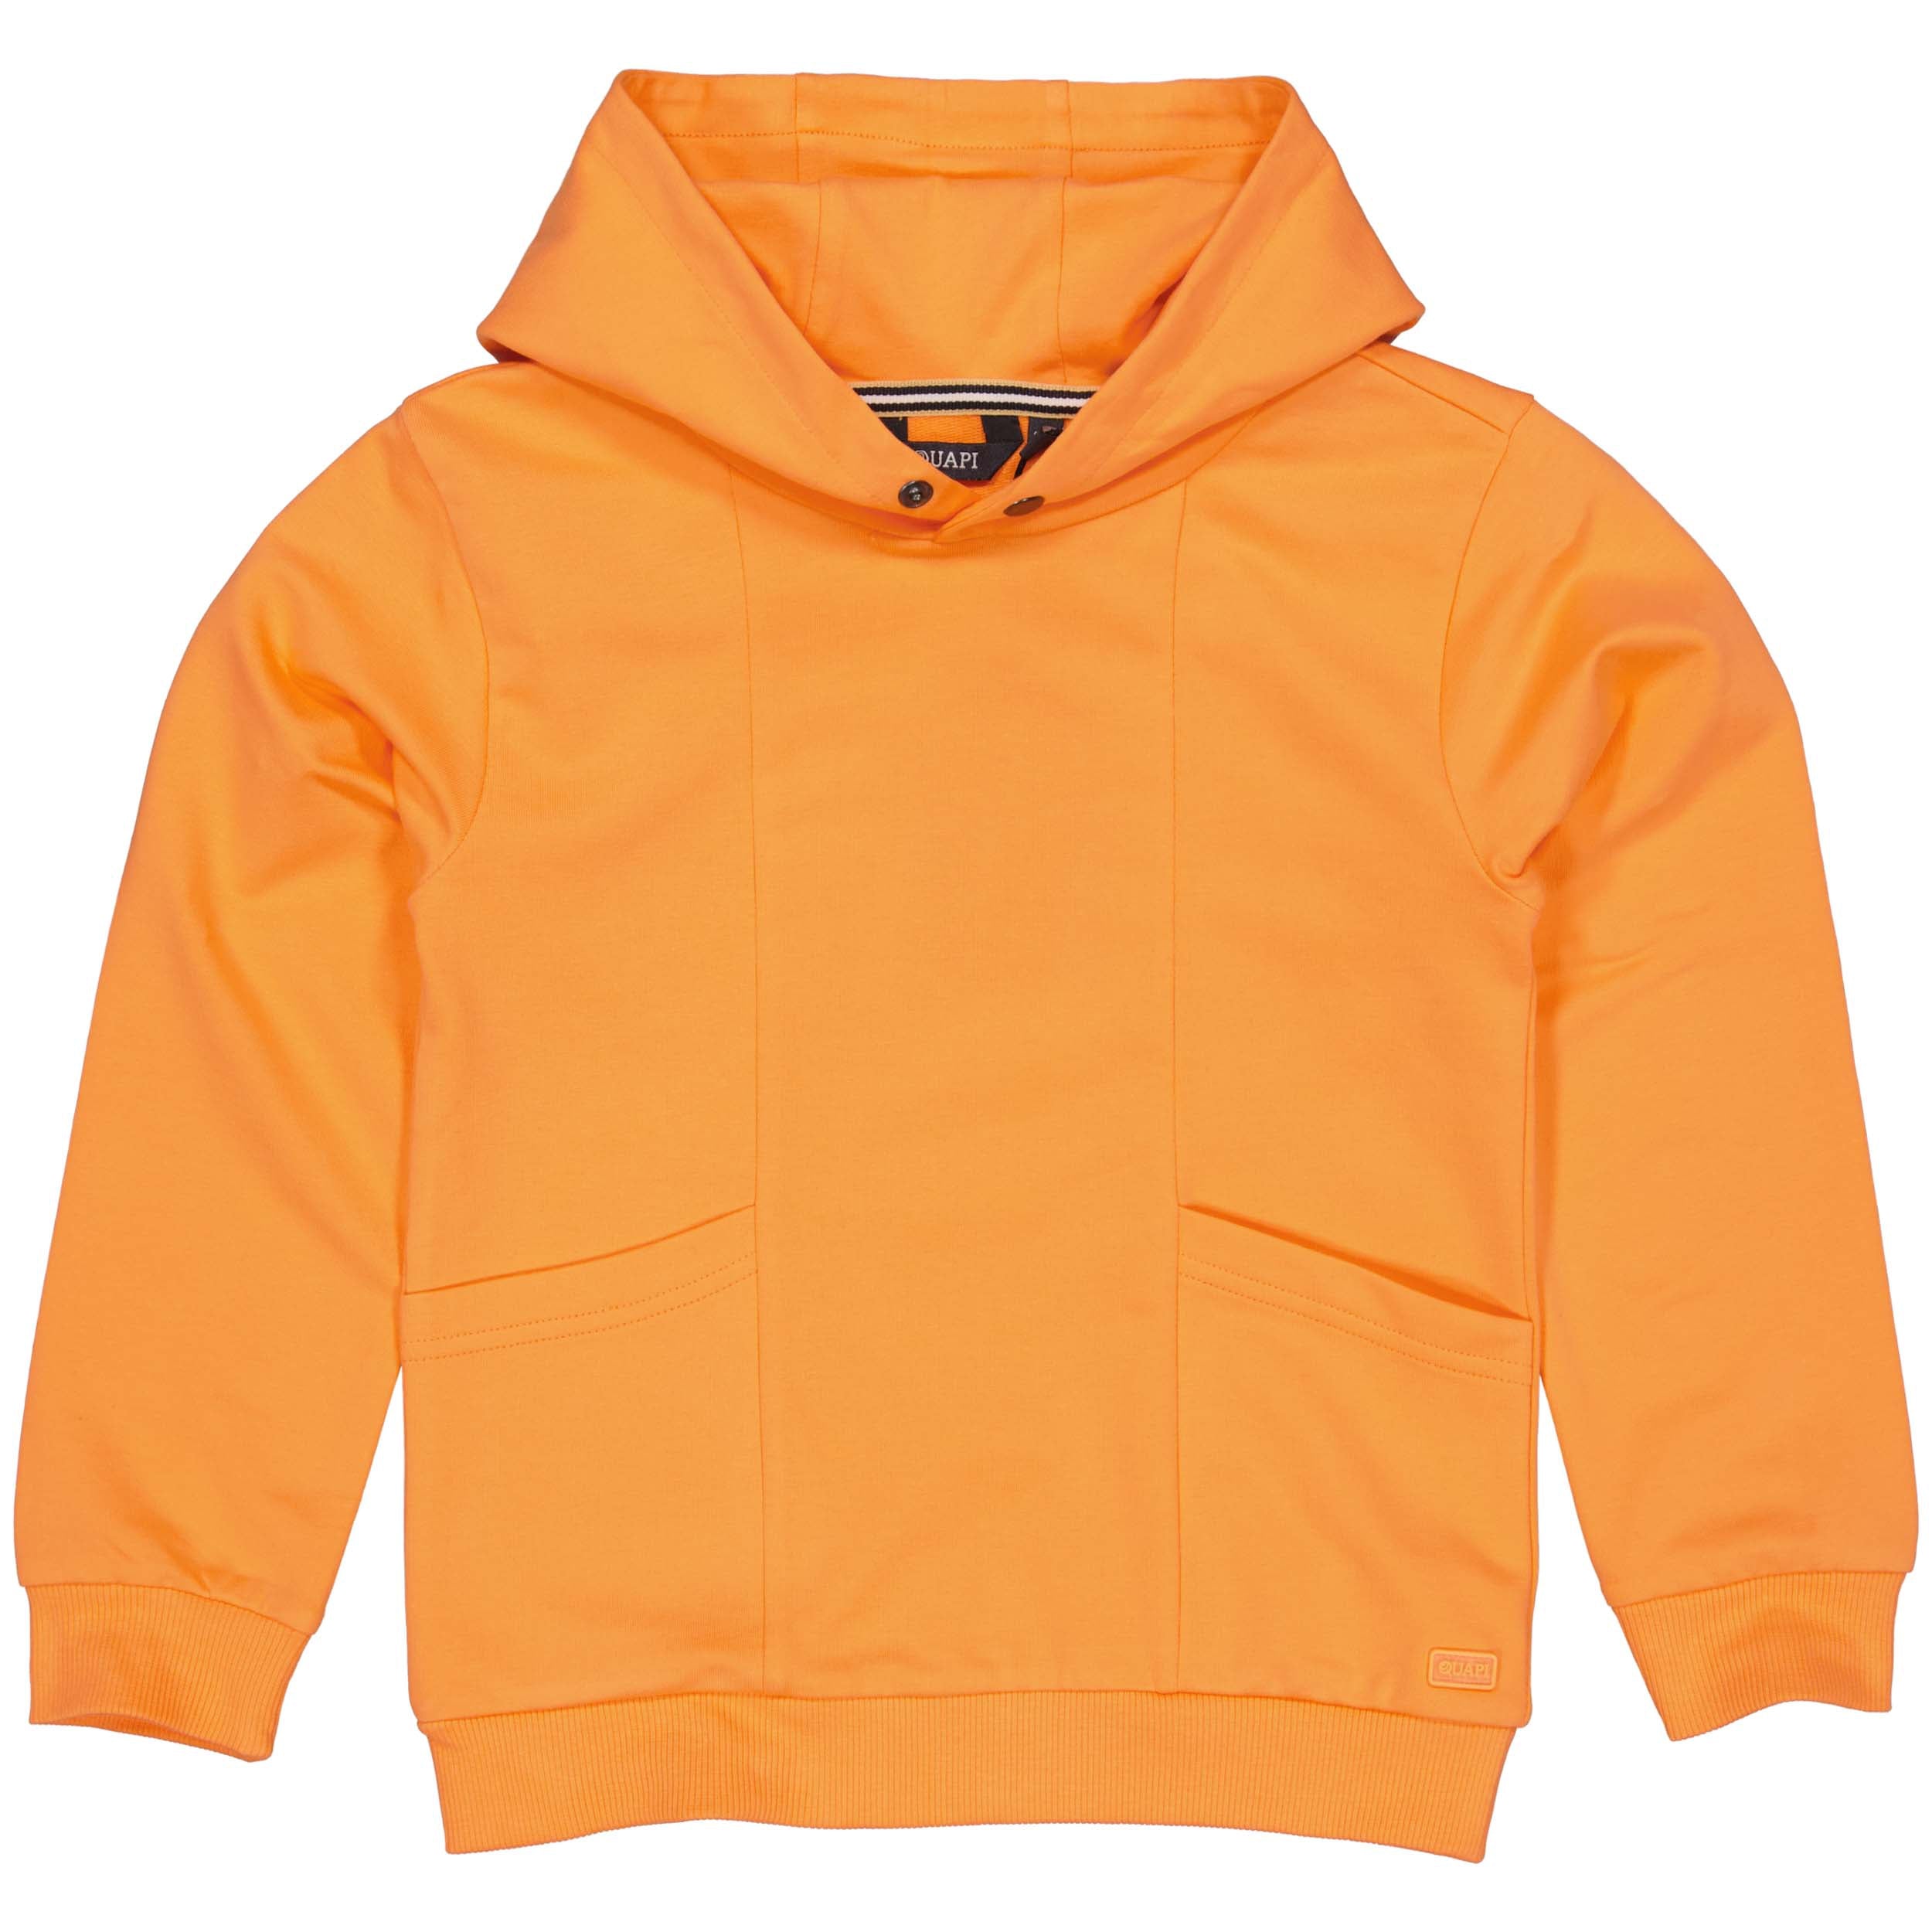 Jongens Hooded Sweater BOAZQS242 van Quapi in de kleur Orange in maat 122-128.